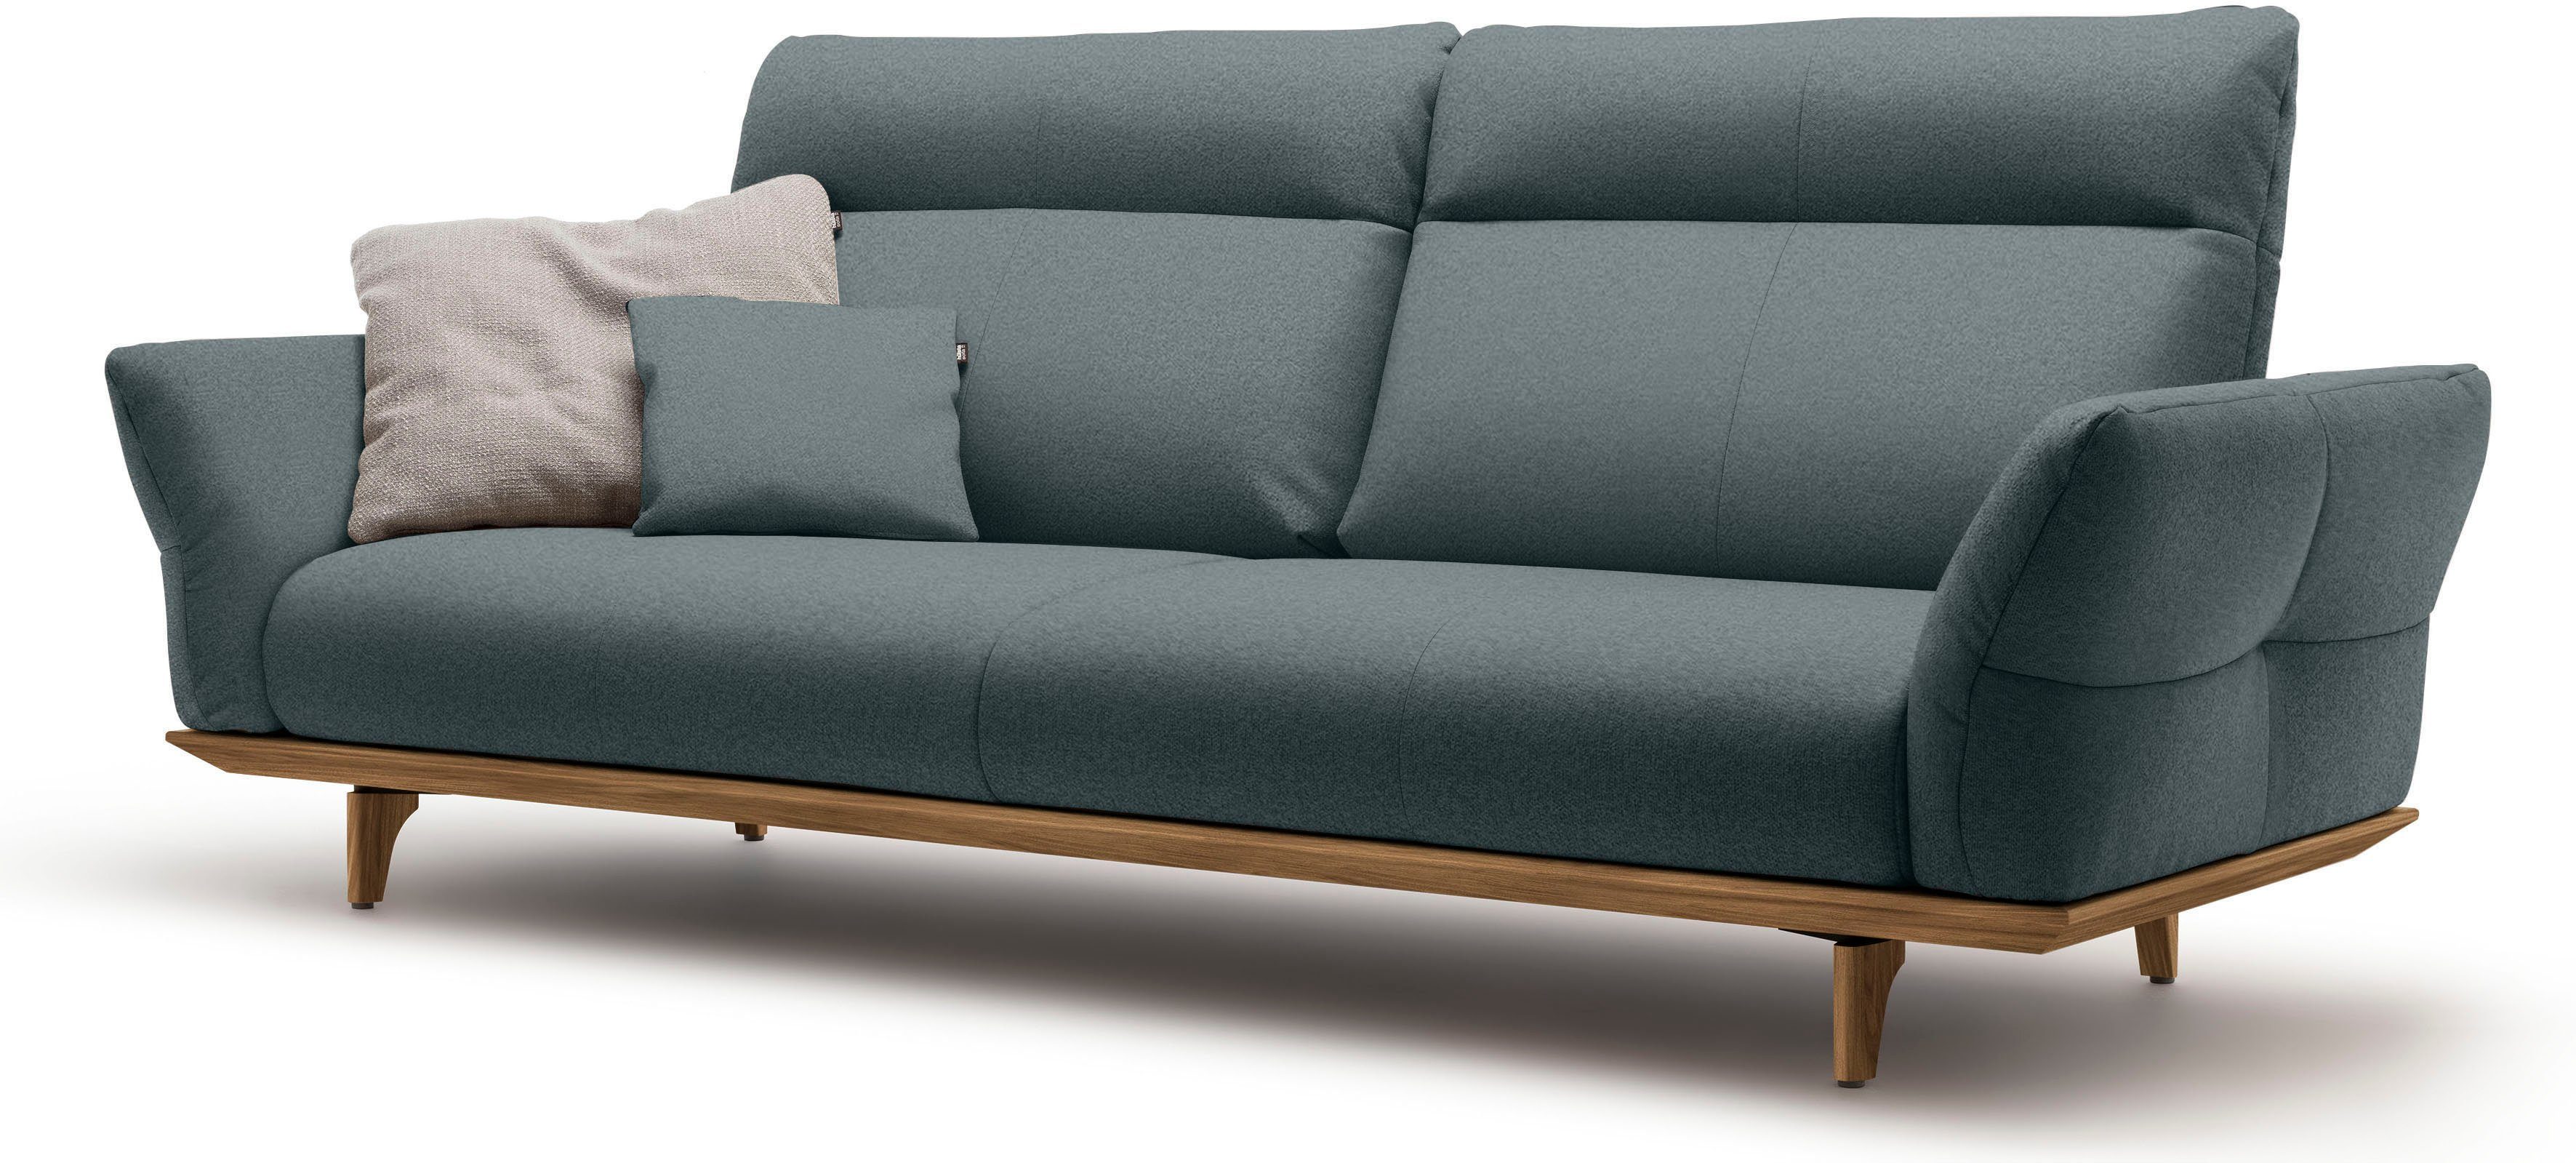 cm Nussbaum, hs.460, hülsta in 228 und Breite Sockel 3,5-Sitzer sofa Füße